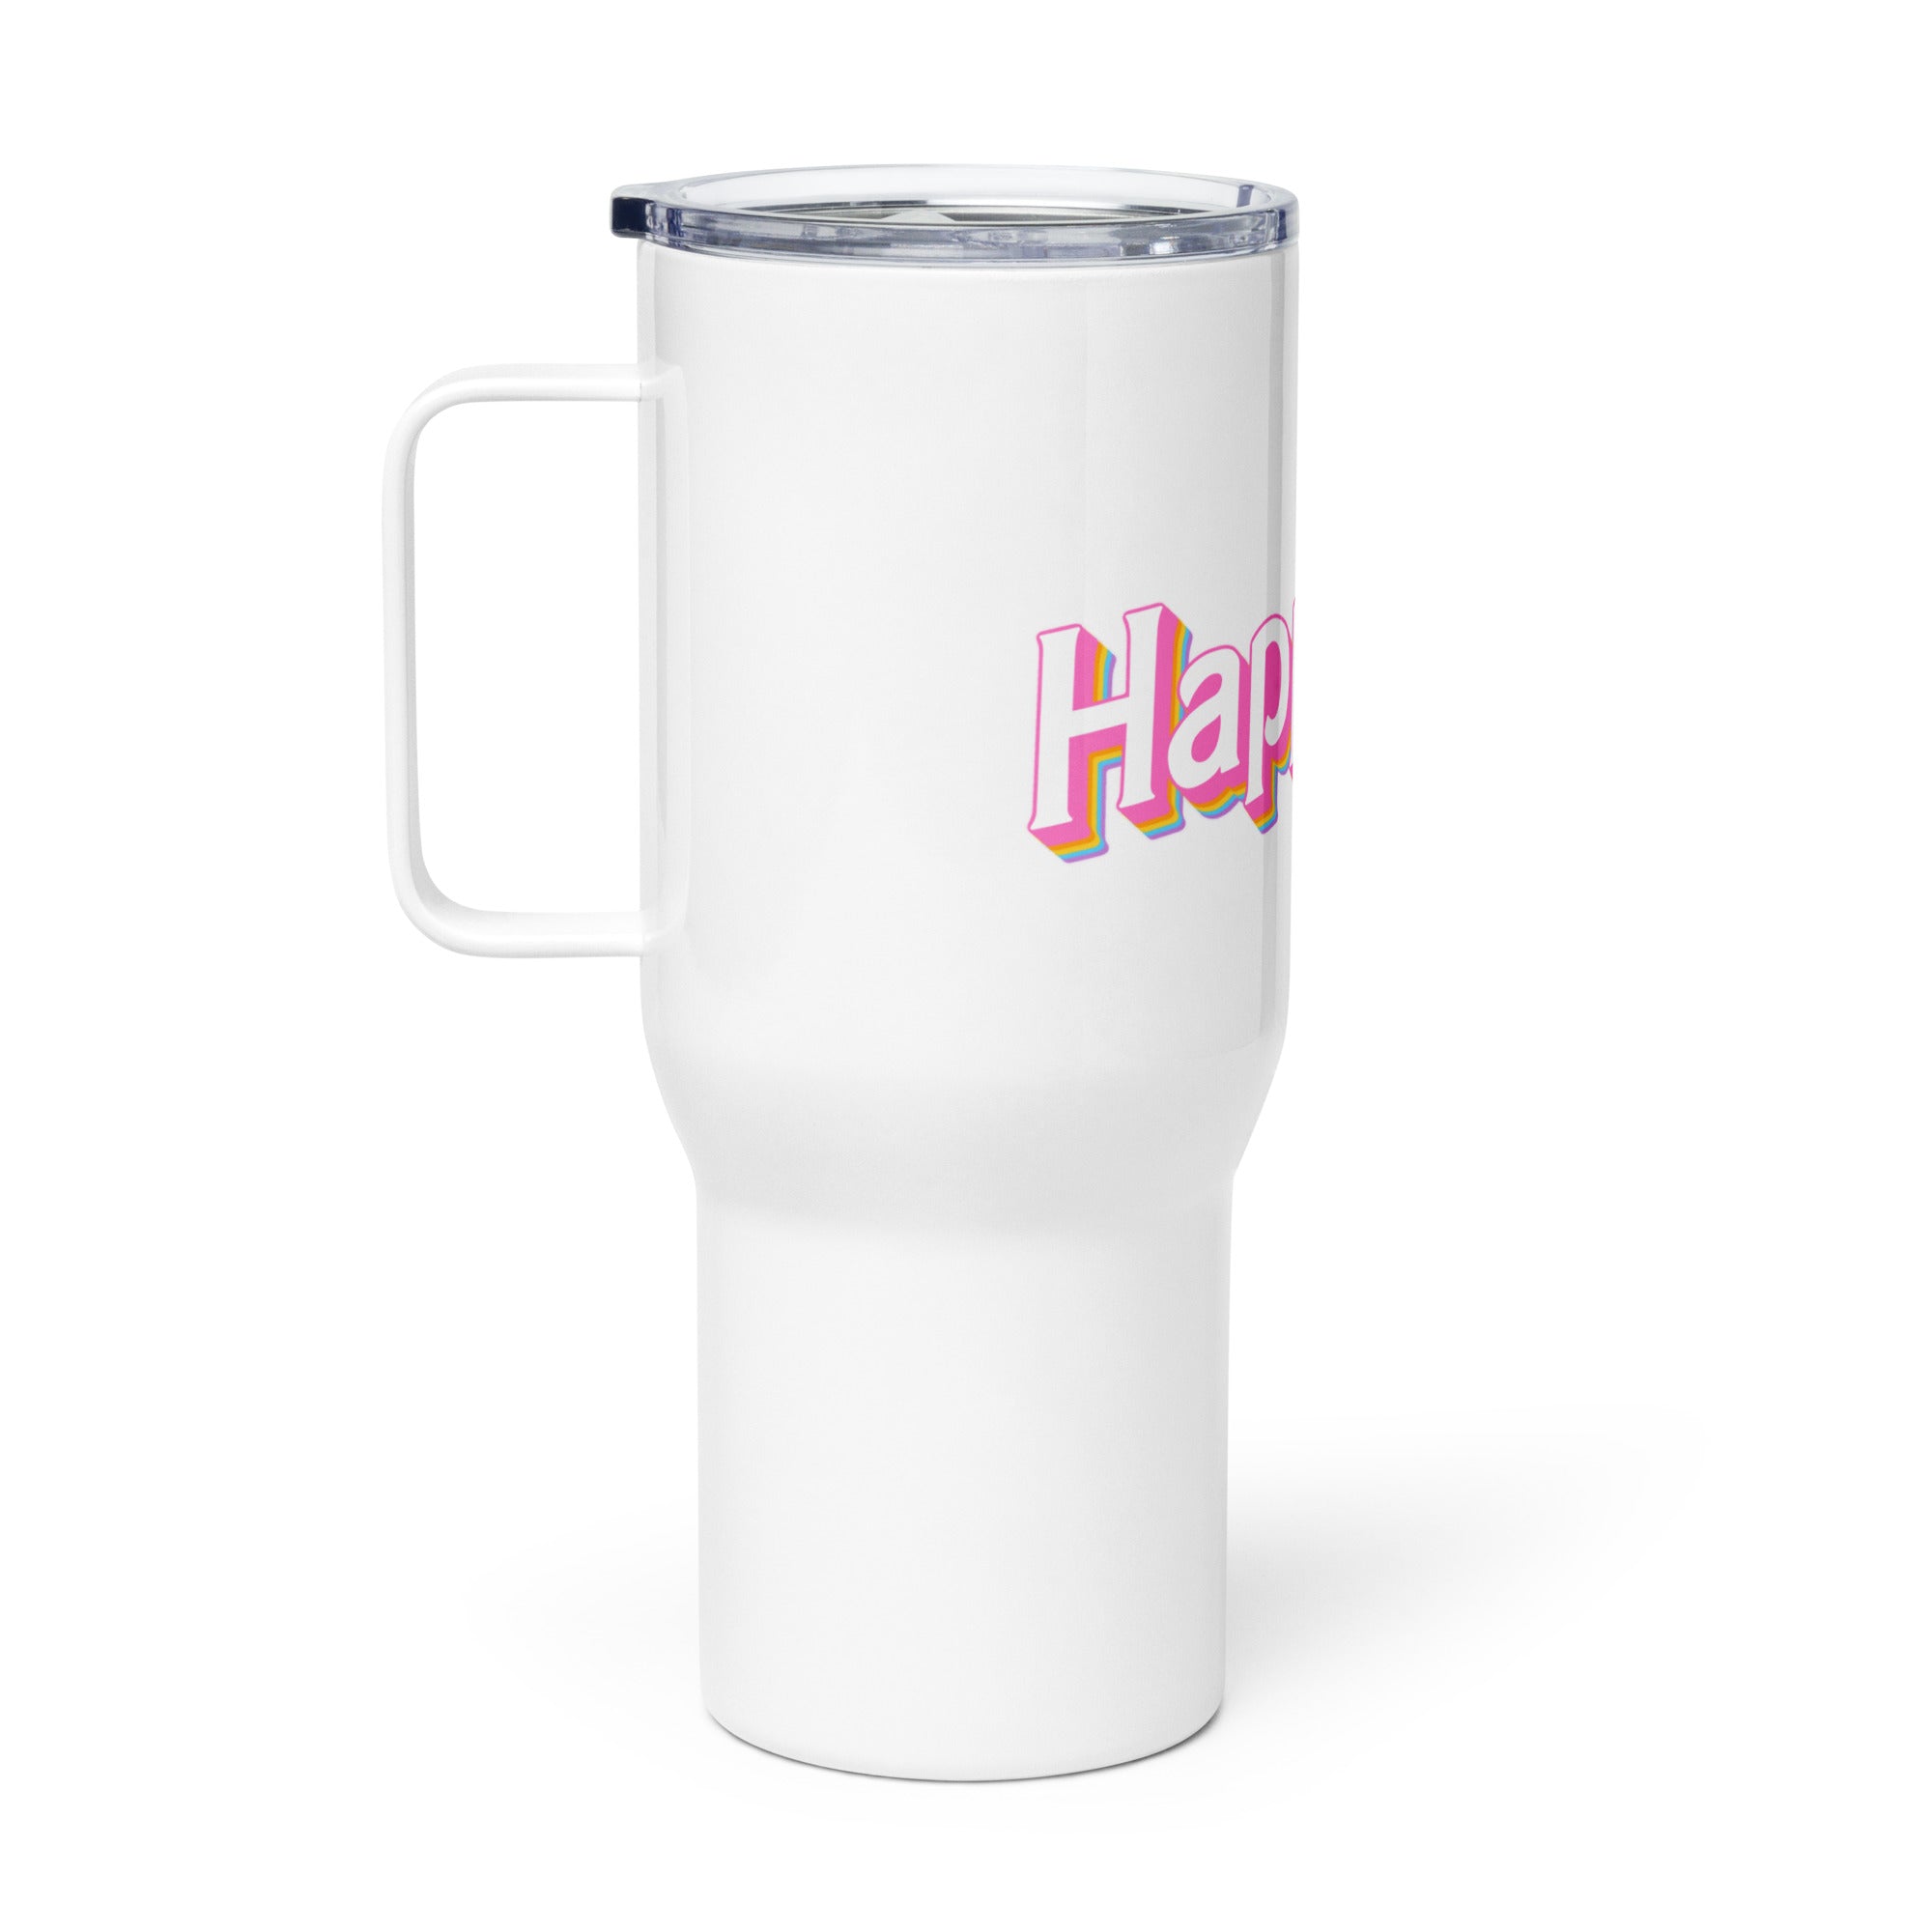 Barbie Travel mug with a handle